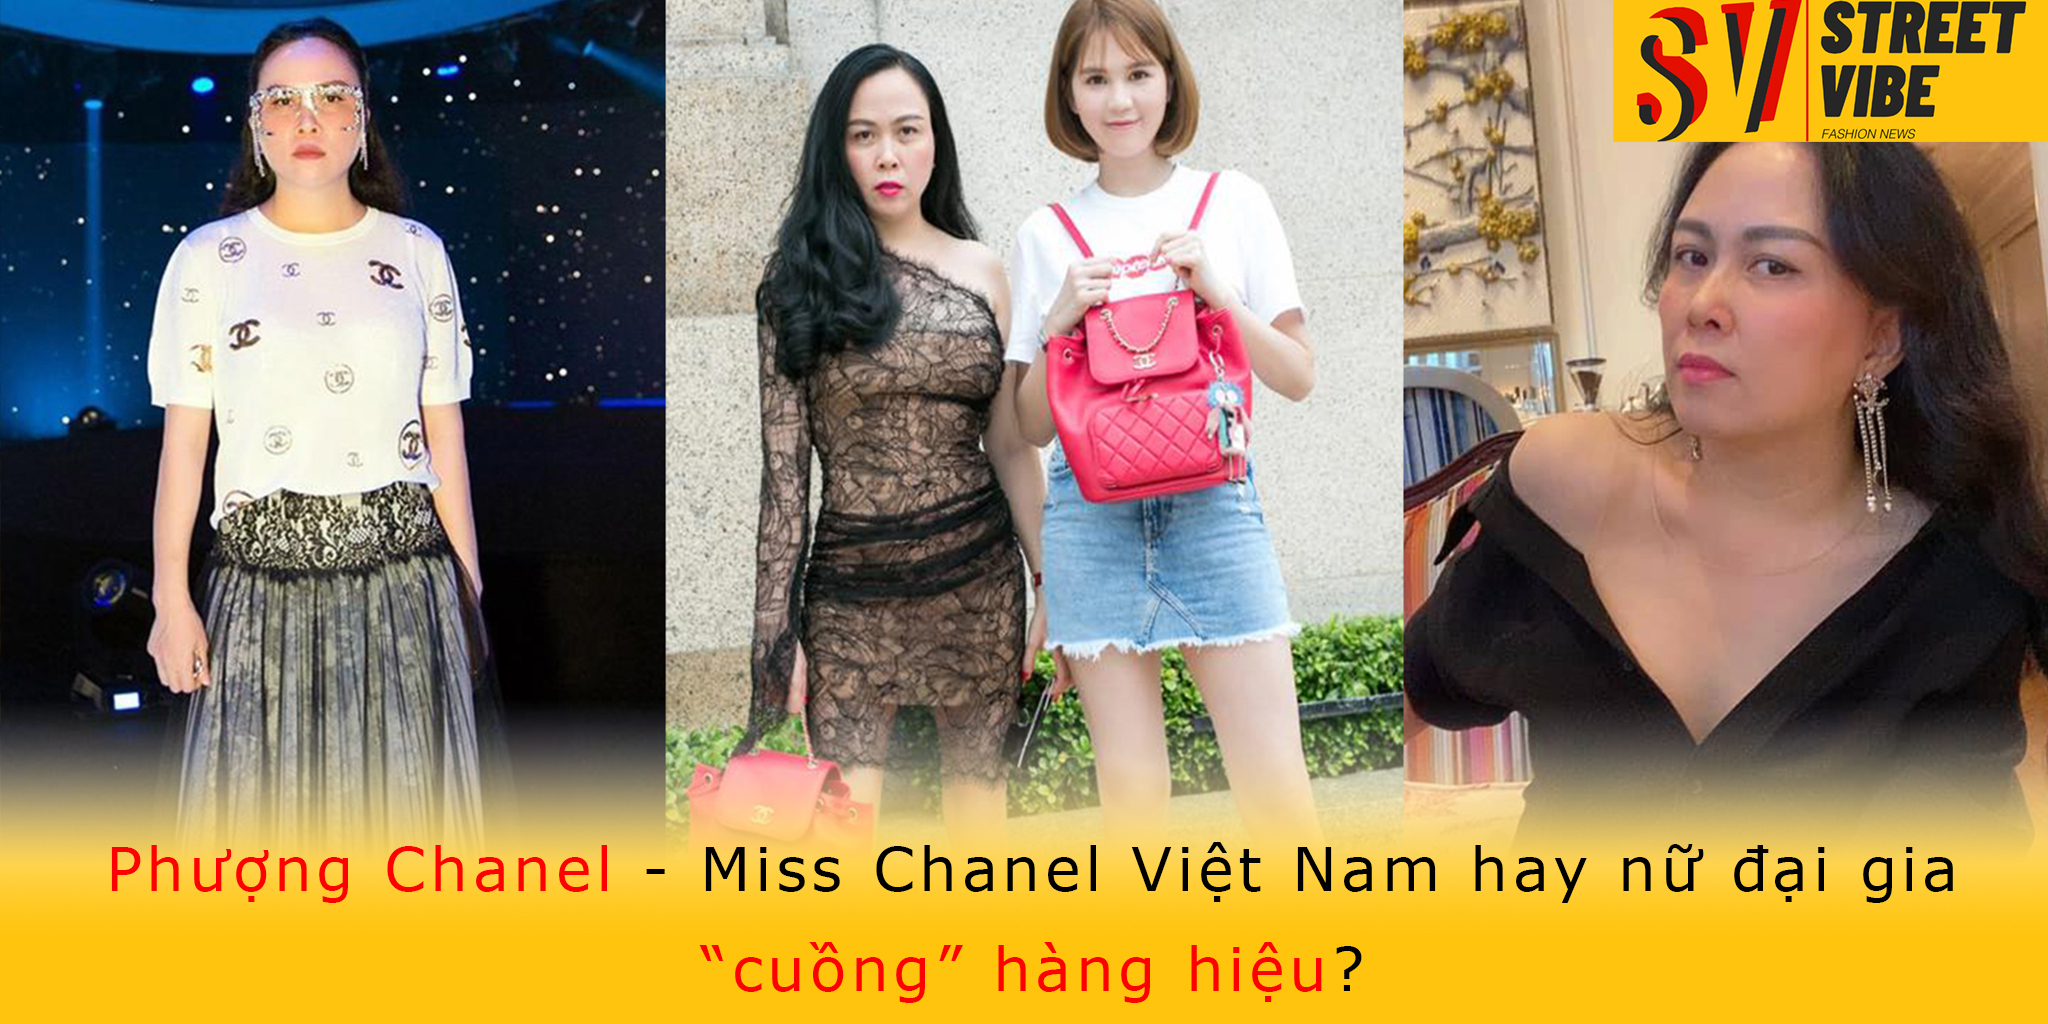 Phượng Chanel  Miss Chanel Việt Nam hay nữ đại gia cuồng hàng hiệu   Street Vibe